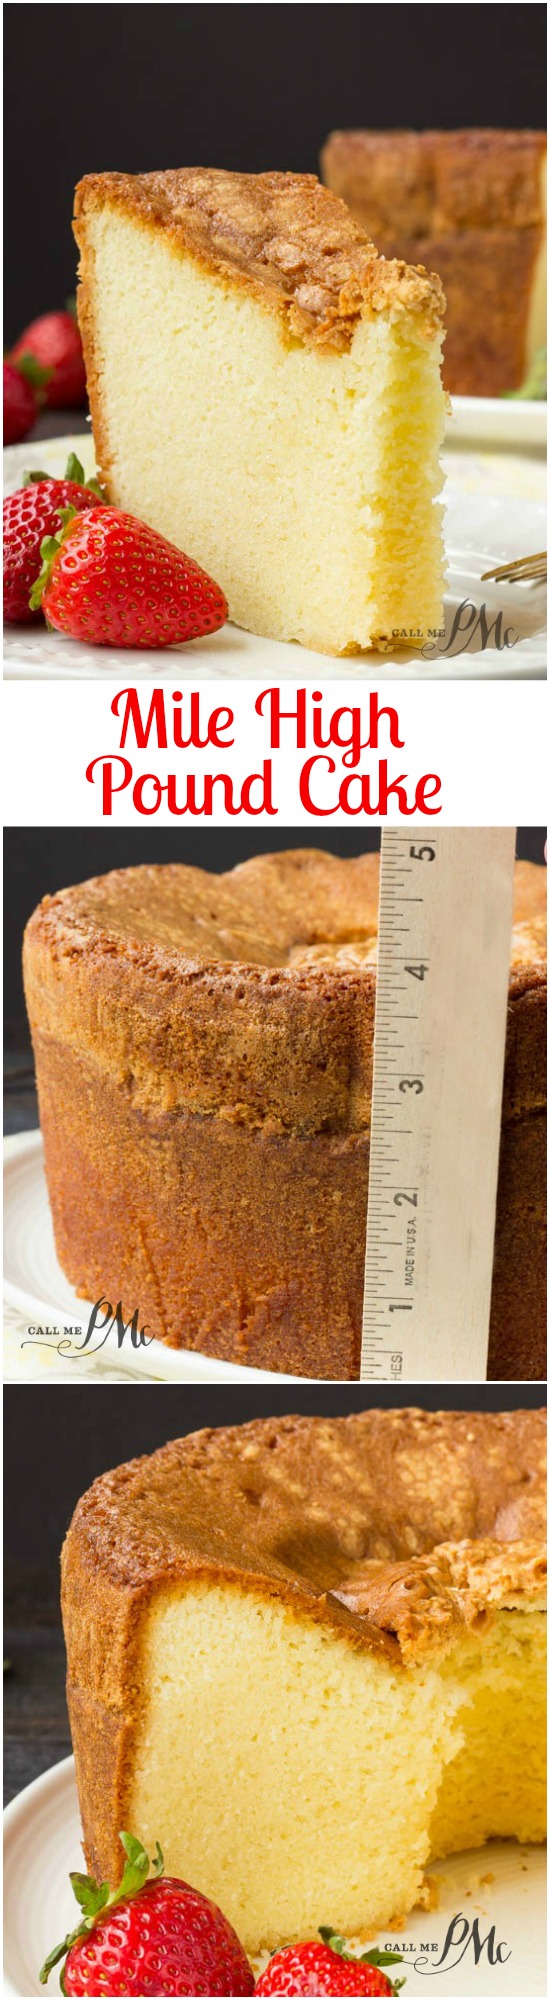 Types of pounds cake by cakengiftsindia1 - Issuu